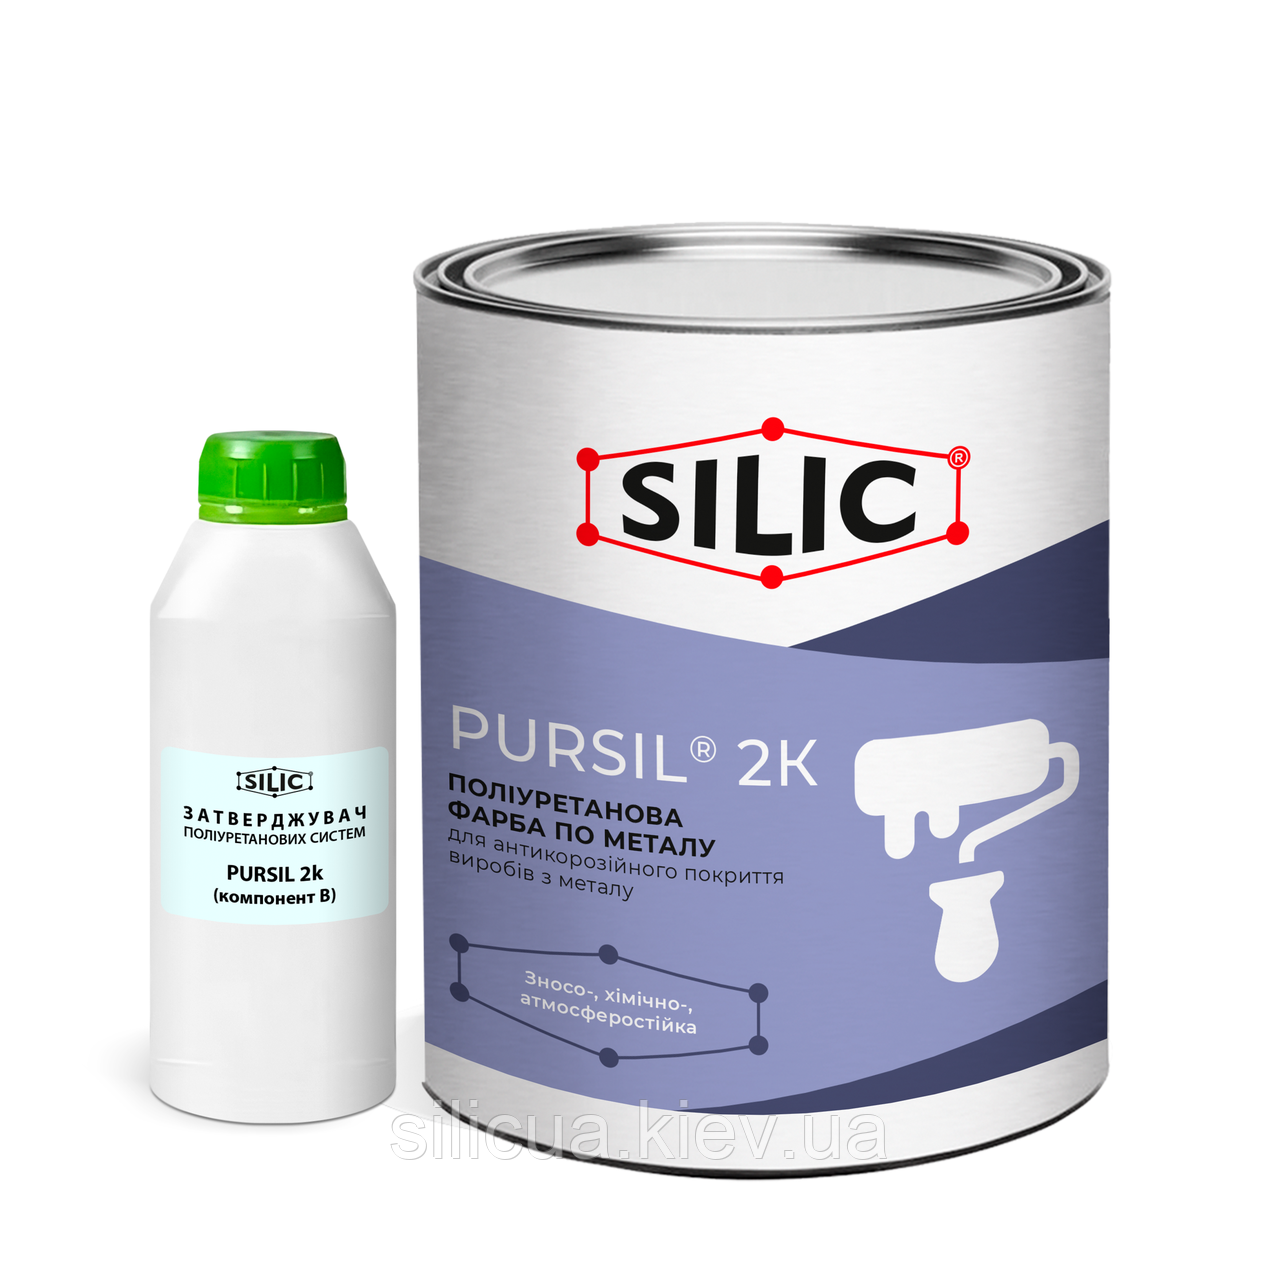 Поліуретанова фарба для металу Pursil 2K (1кг) Сілік